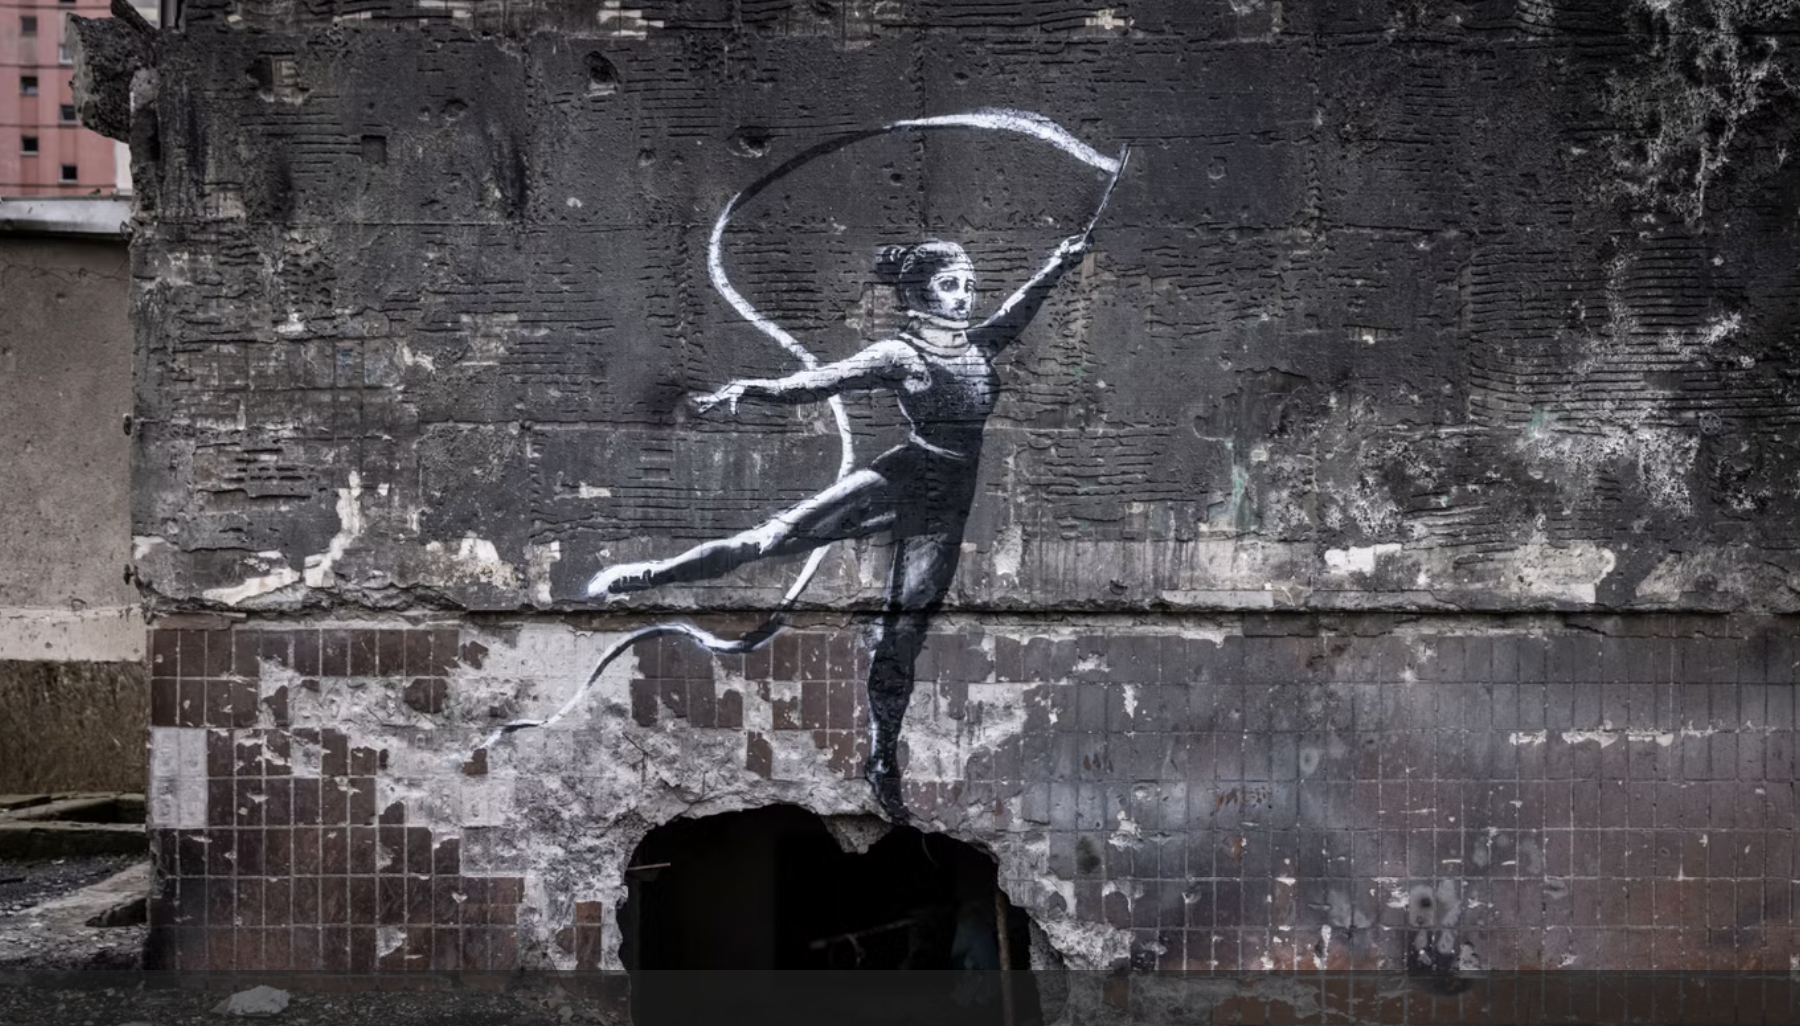 Suspected Banksy in Ukraine